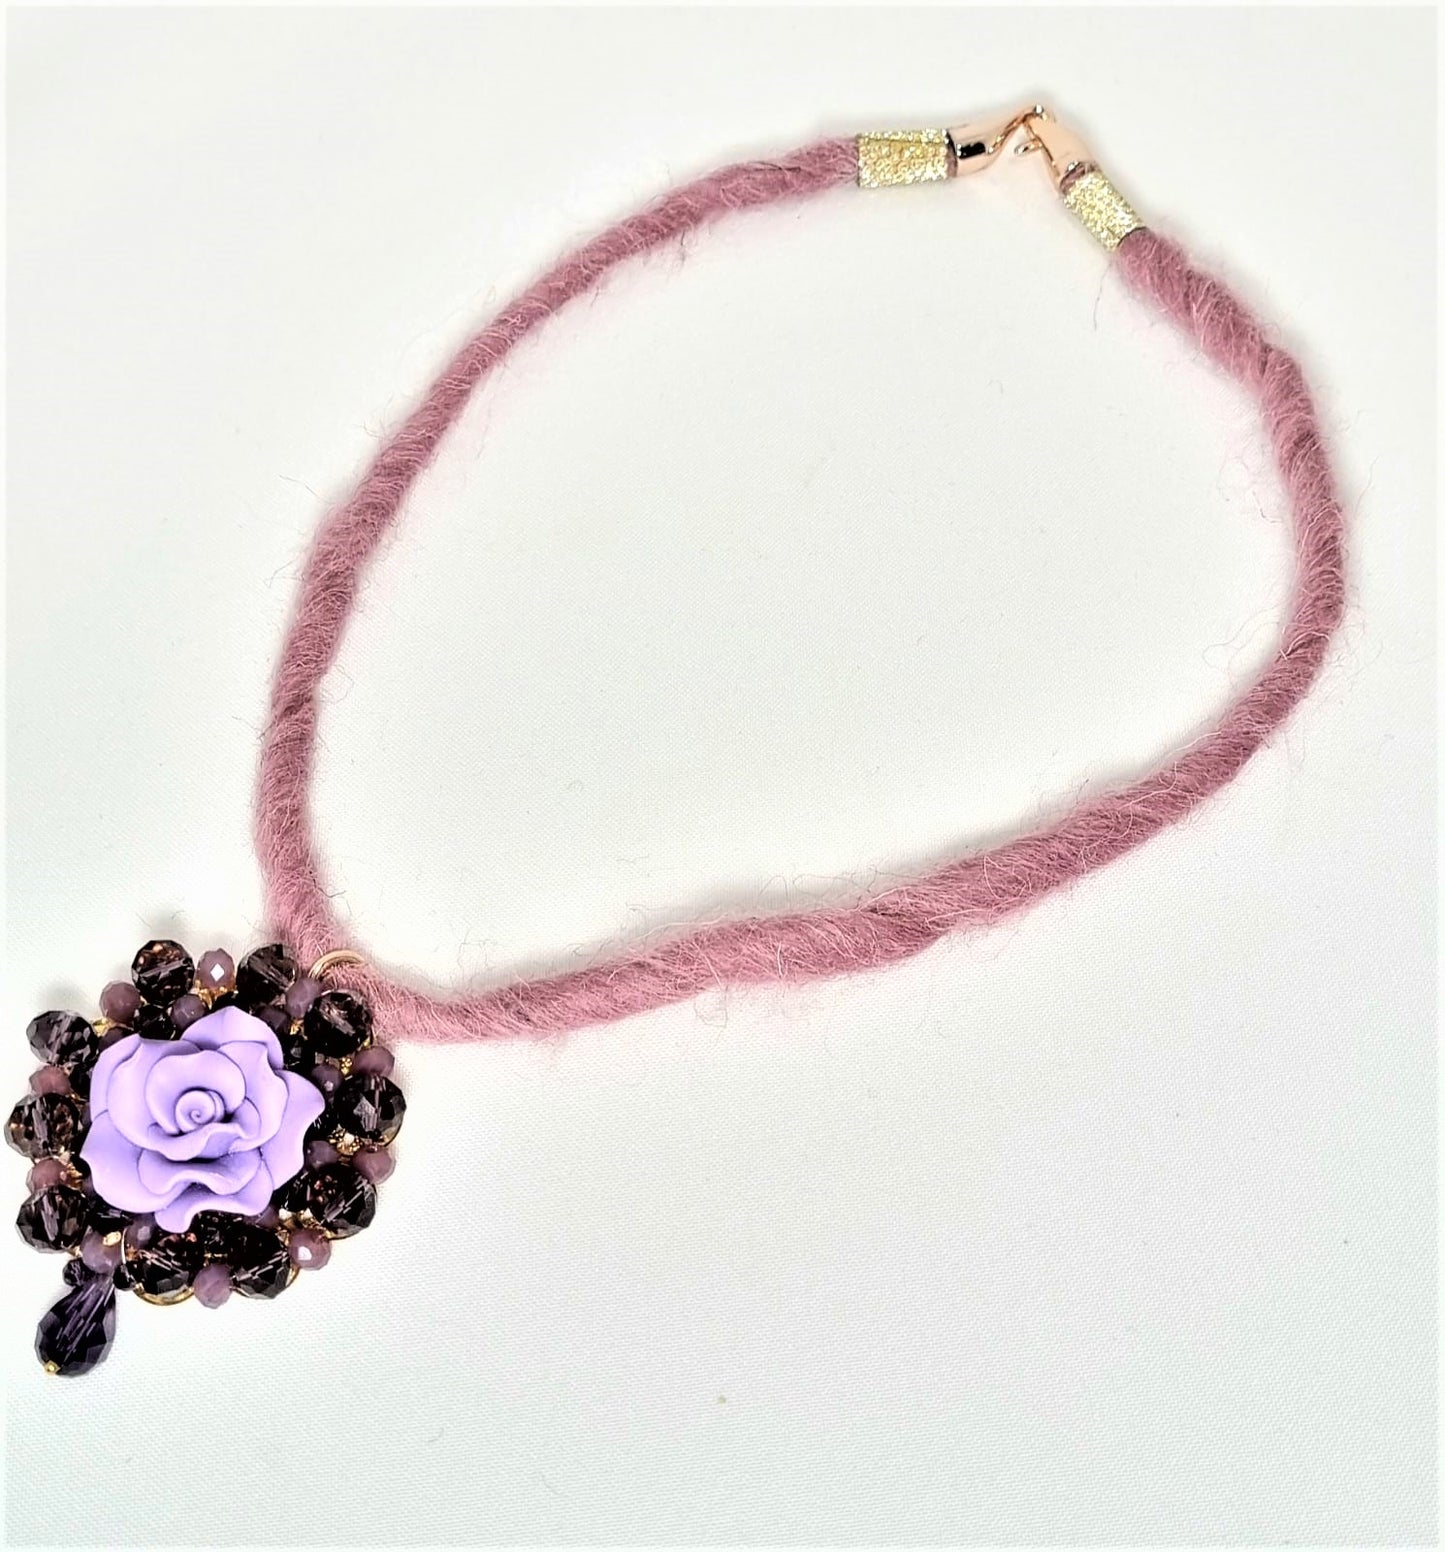 Collana LE ROSE .016 un filo morbido di lana rosa cipria, ciondolo resina fiore e cristalli.